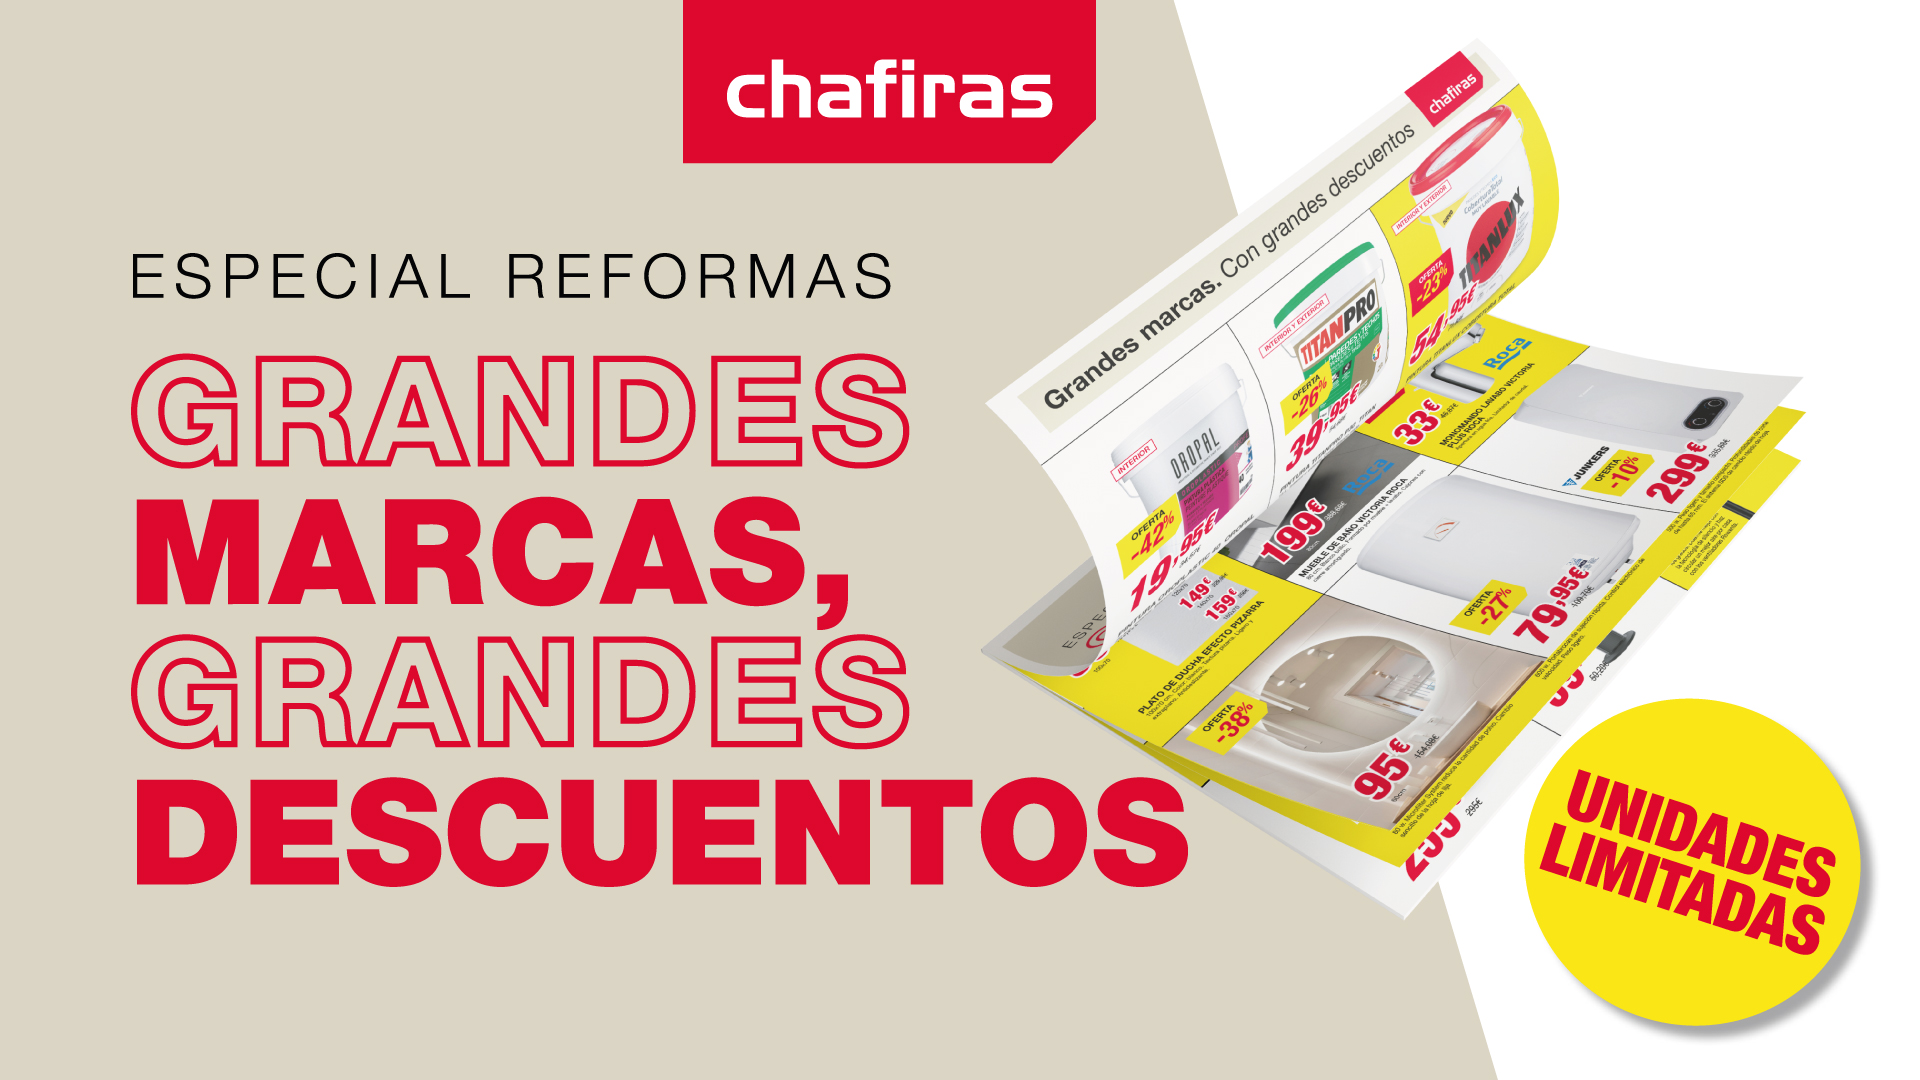 Chafiras presenta su campaña “Especial Reformas” con grandes novedades